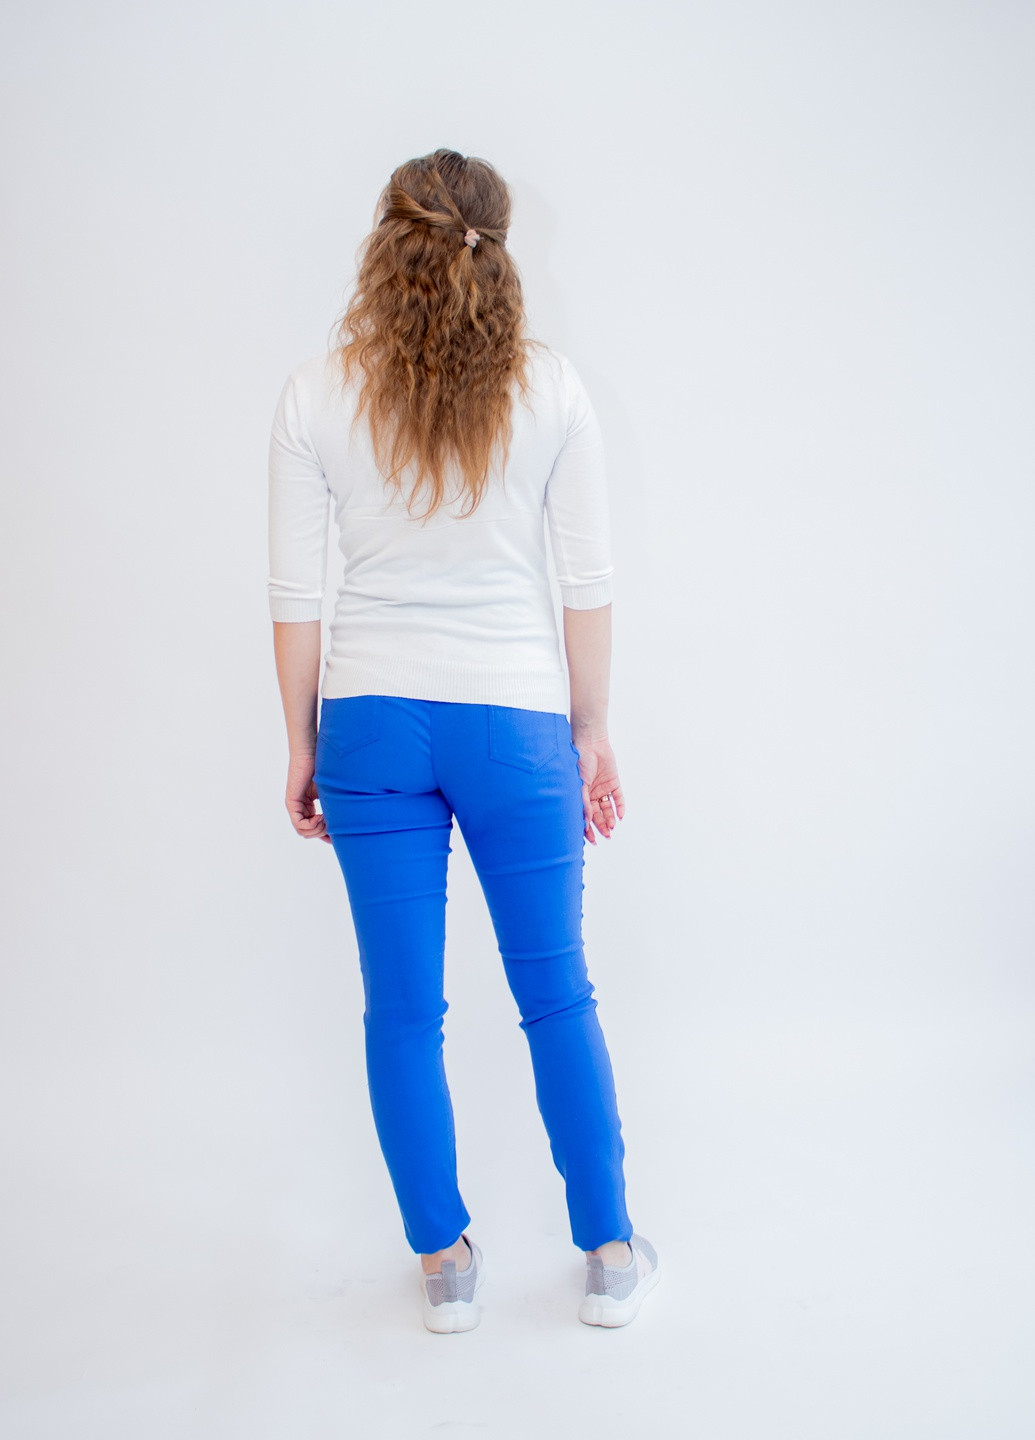 Голубые летние джеггинсы джинсы для беременных premom l голубые (46-48) Makosh.top